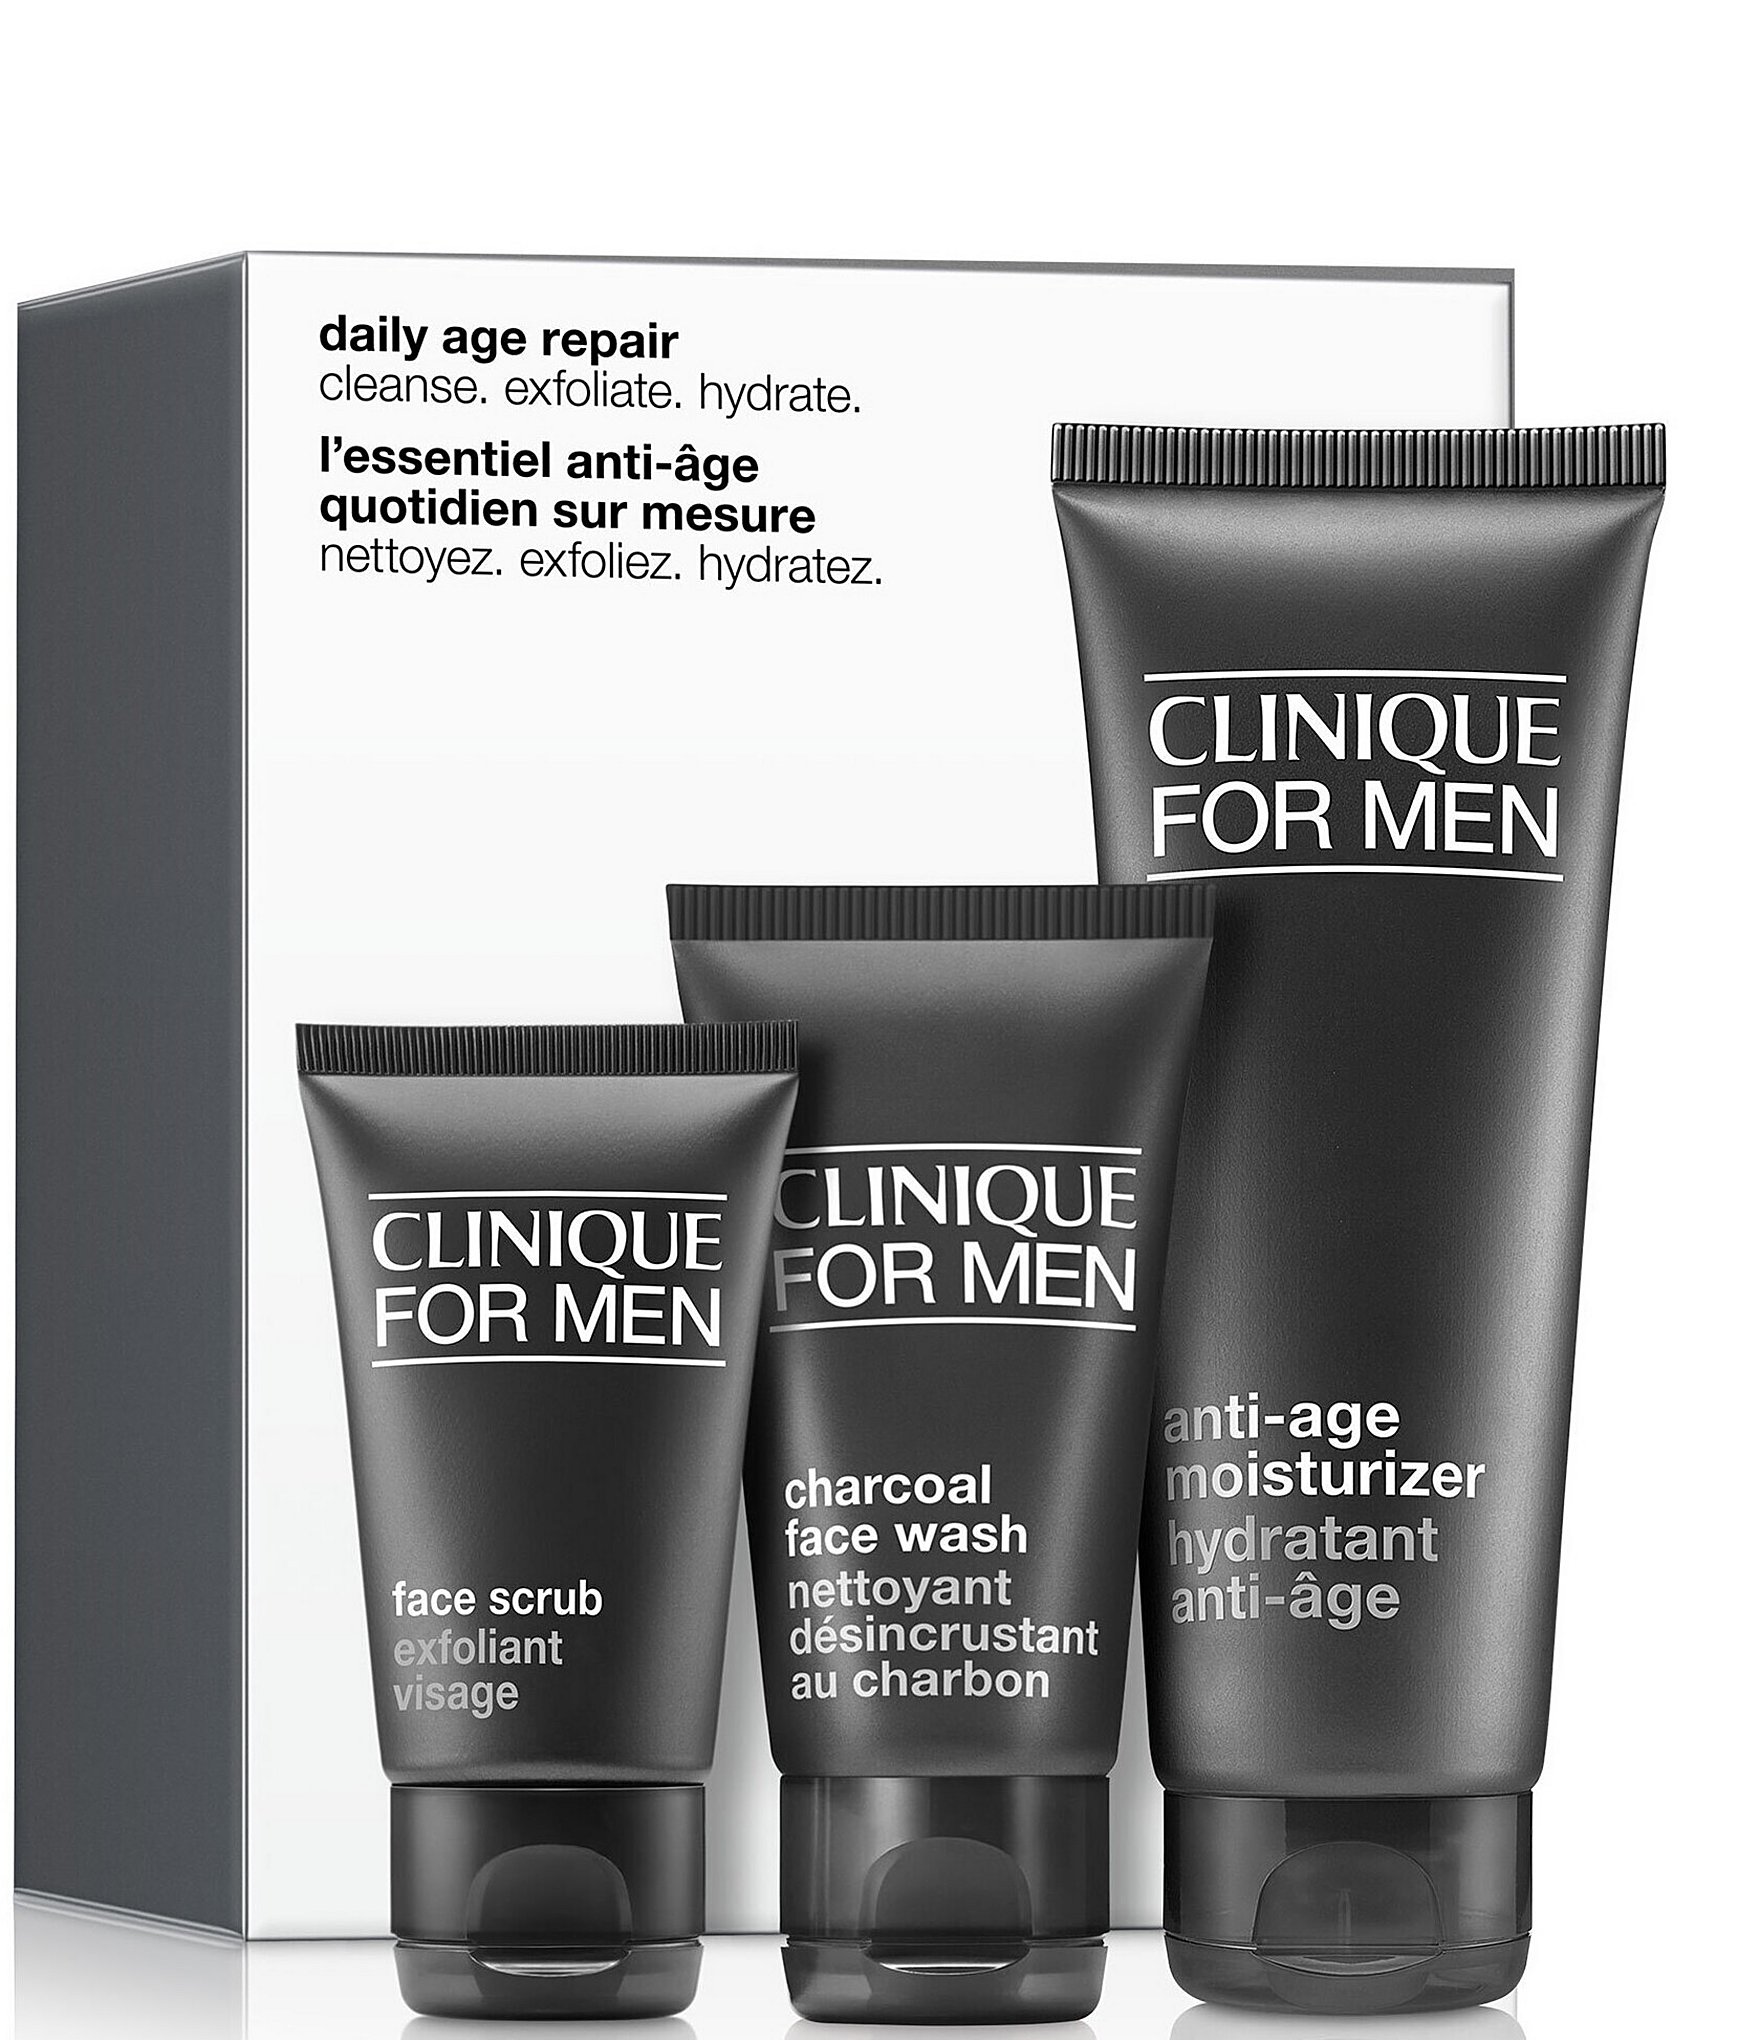 stoel uitspraak agenda Clinique Daily Age Repair Skincare Set for Men | Dillard's